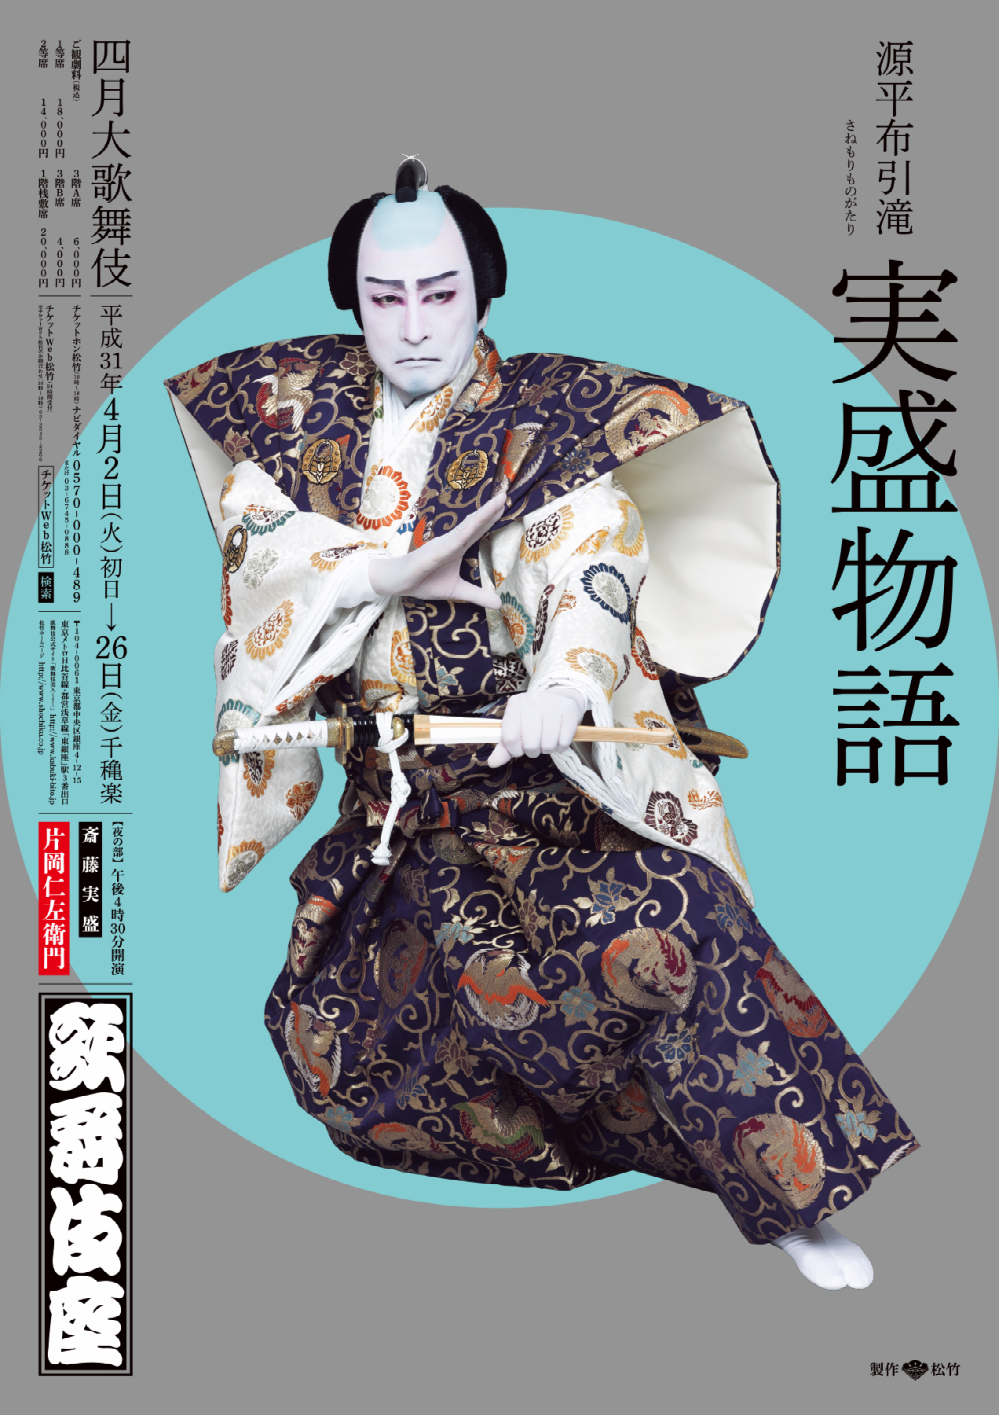 歌舞伎座「四月大歌舞伎」特別ポスターが完成